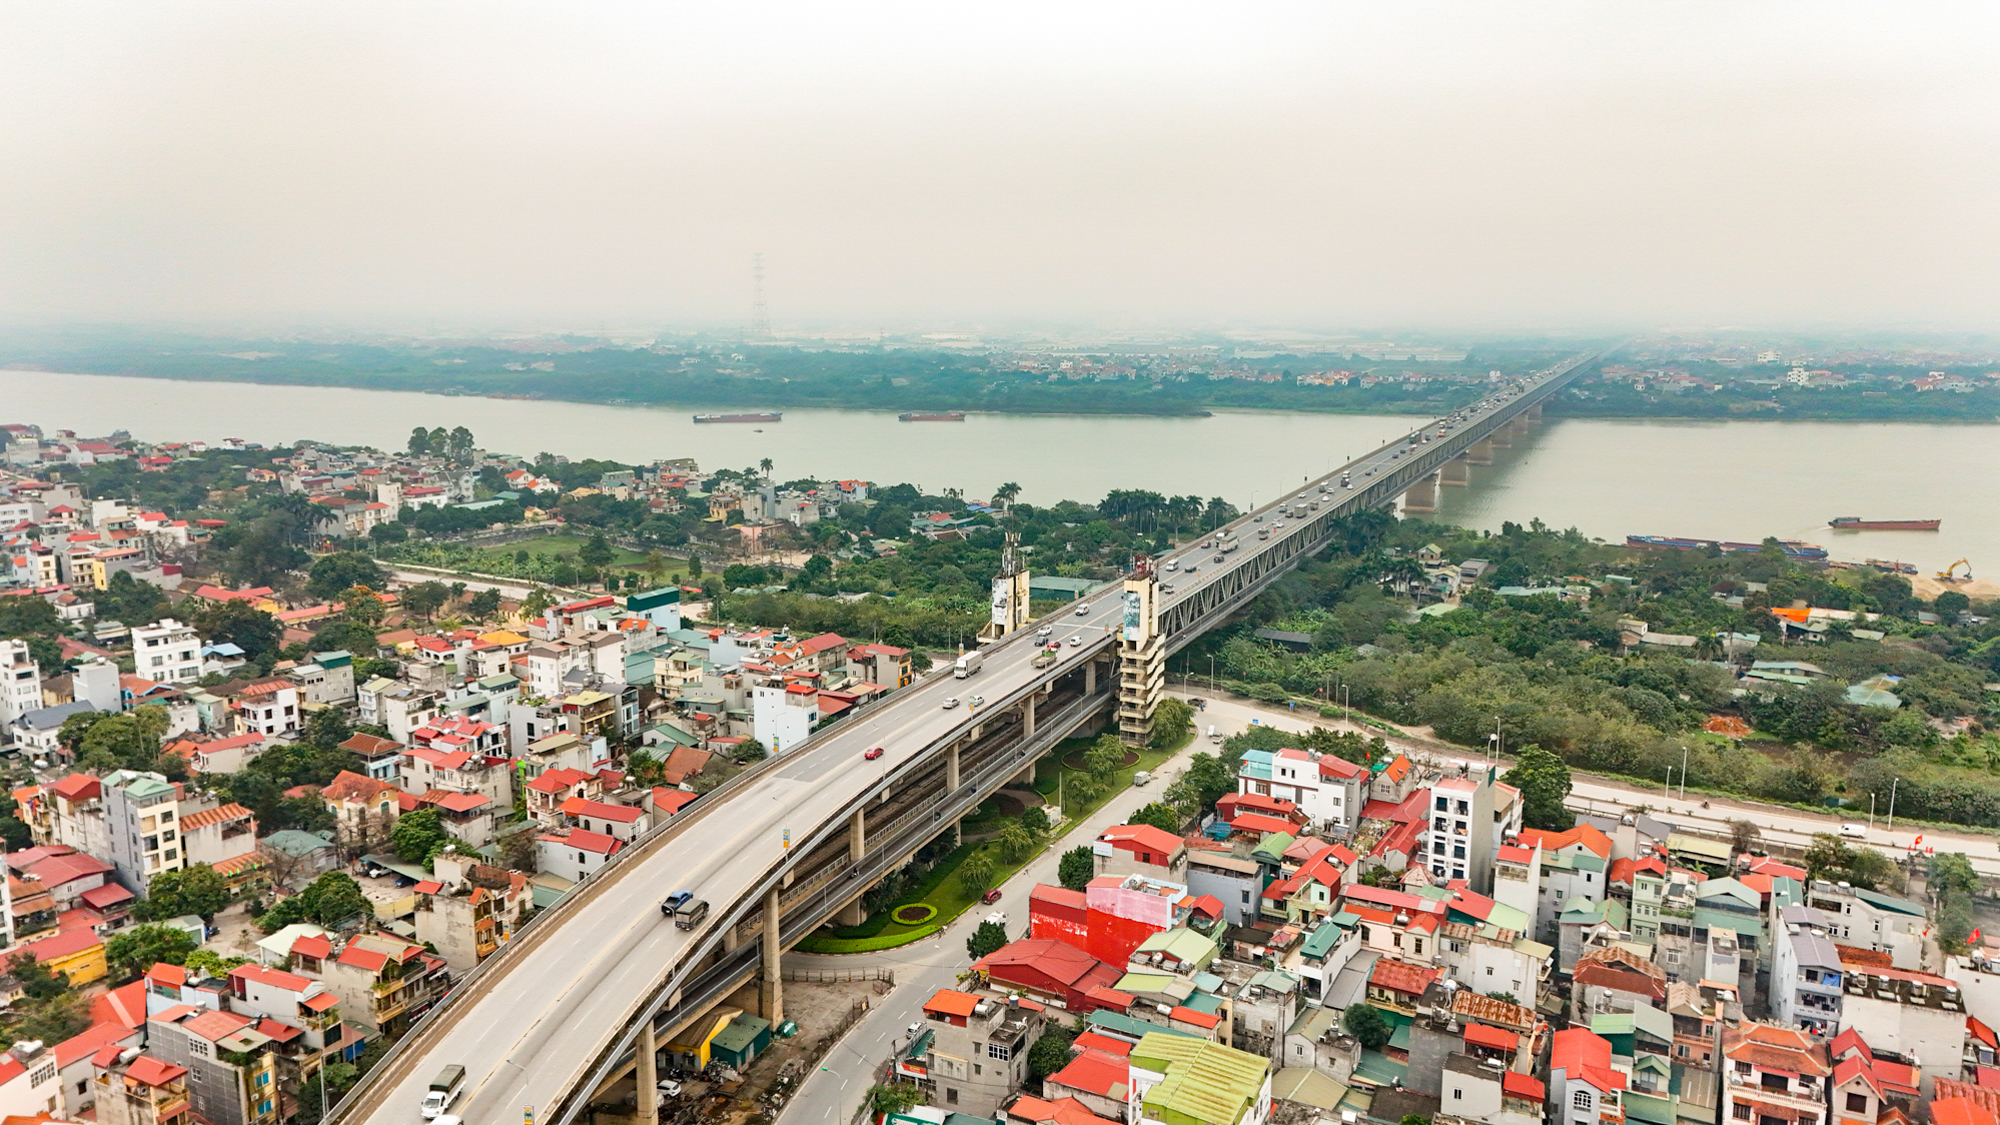 Cầu vượt sông 2 tầng duy nhất, thời gian thi công lâu nhất ở Hà Nội- Ảnh 4.